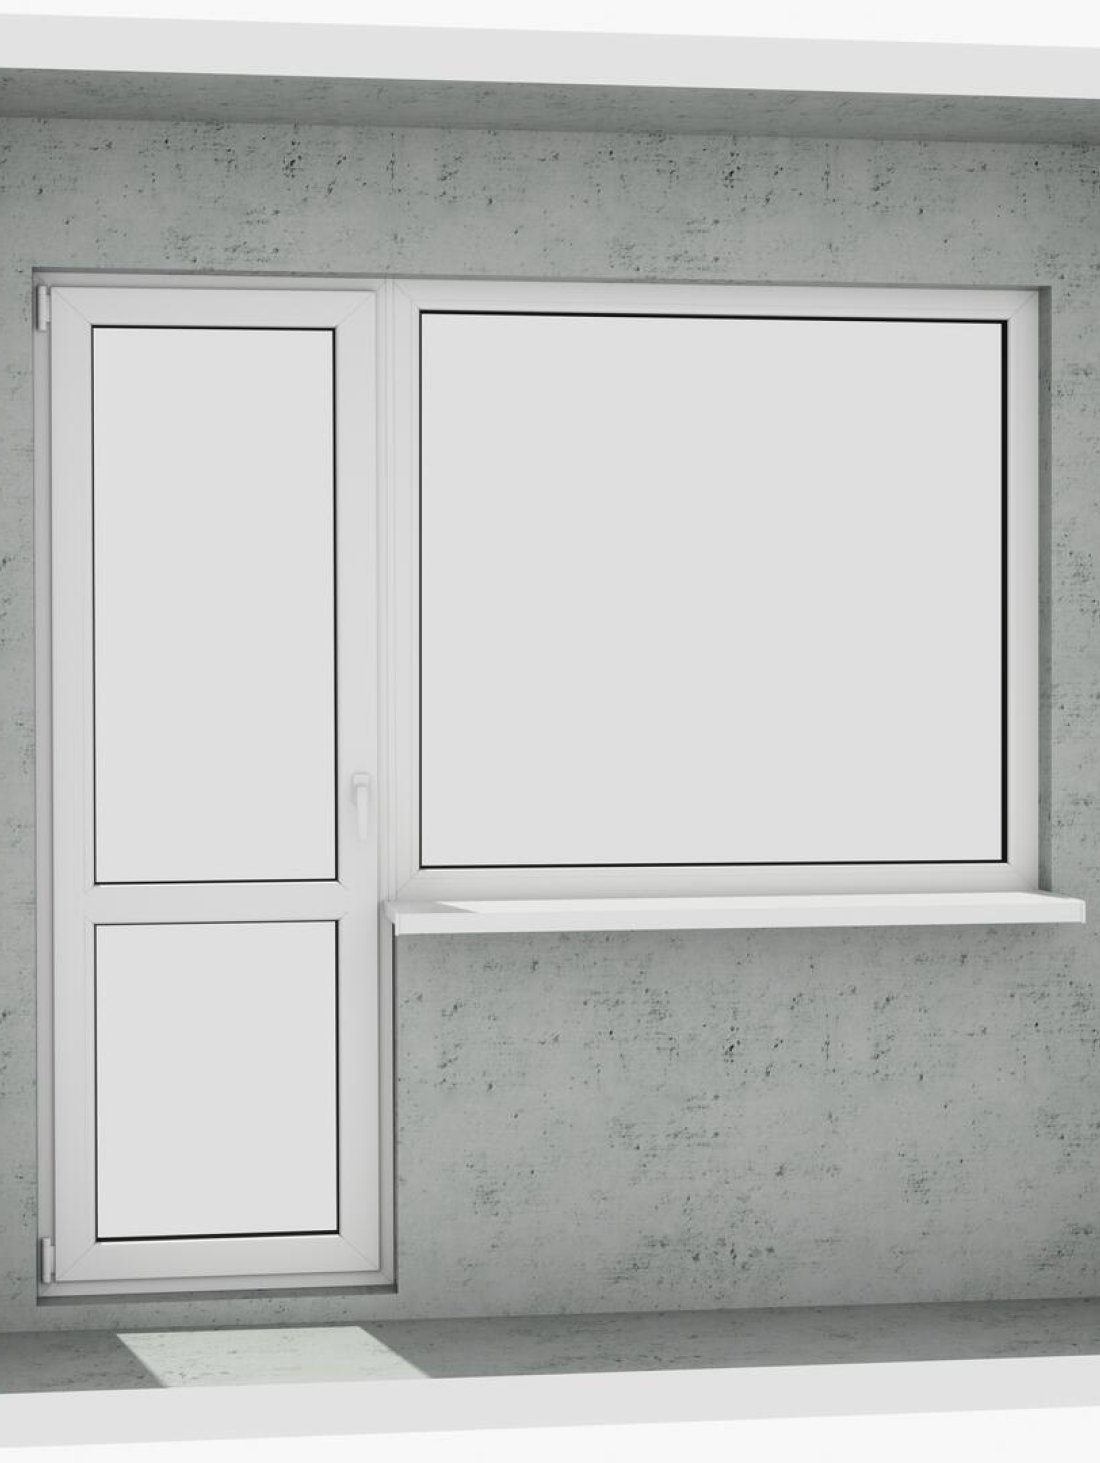 Вихід на лоджію (балкон): класичний білий металопластиковий балконний блок (в двері є режим провітрювання, вікно не відкривається) - Паритет UA